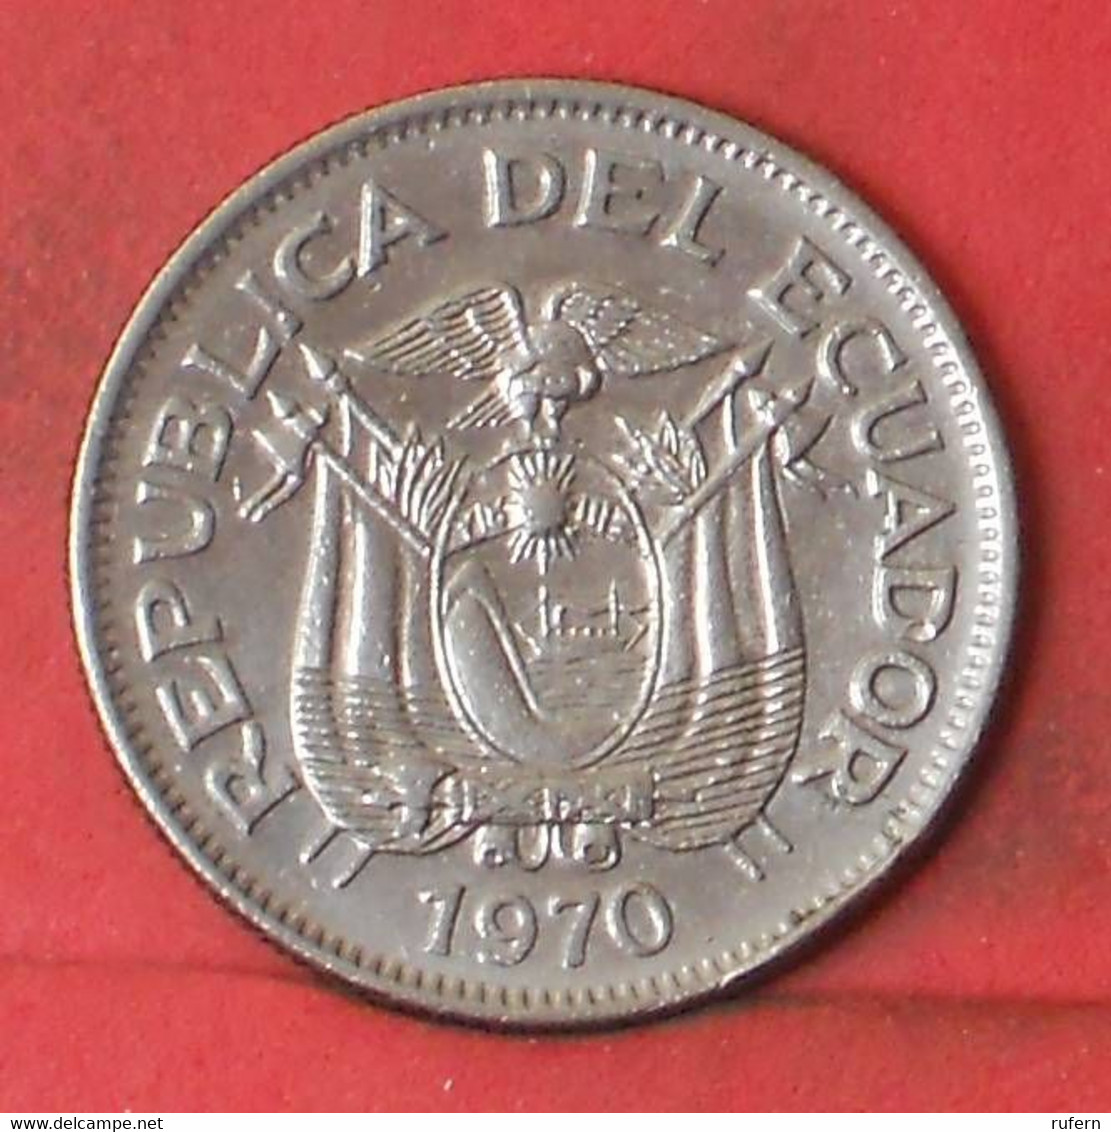 ECUADOR 1 SUCRE 1970 -    KM# 78b - (Nº41286) - Ecuador